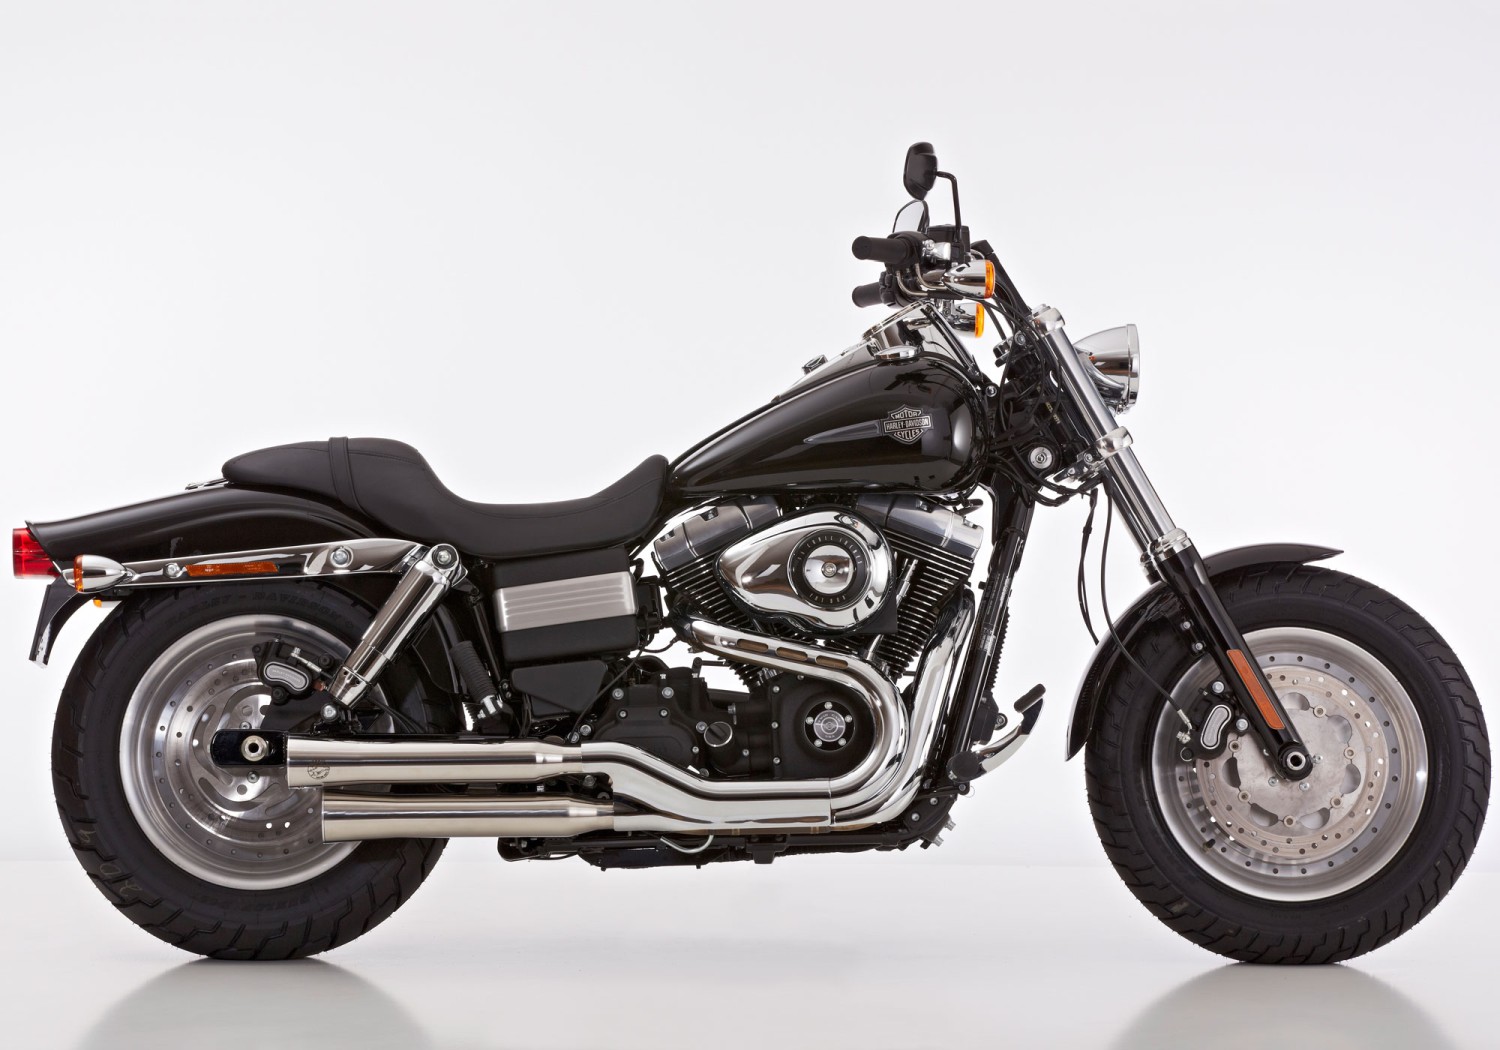  Harley Davidson Dyna Wide Glide, Bj. 2010-2012 